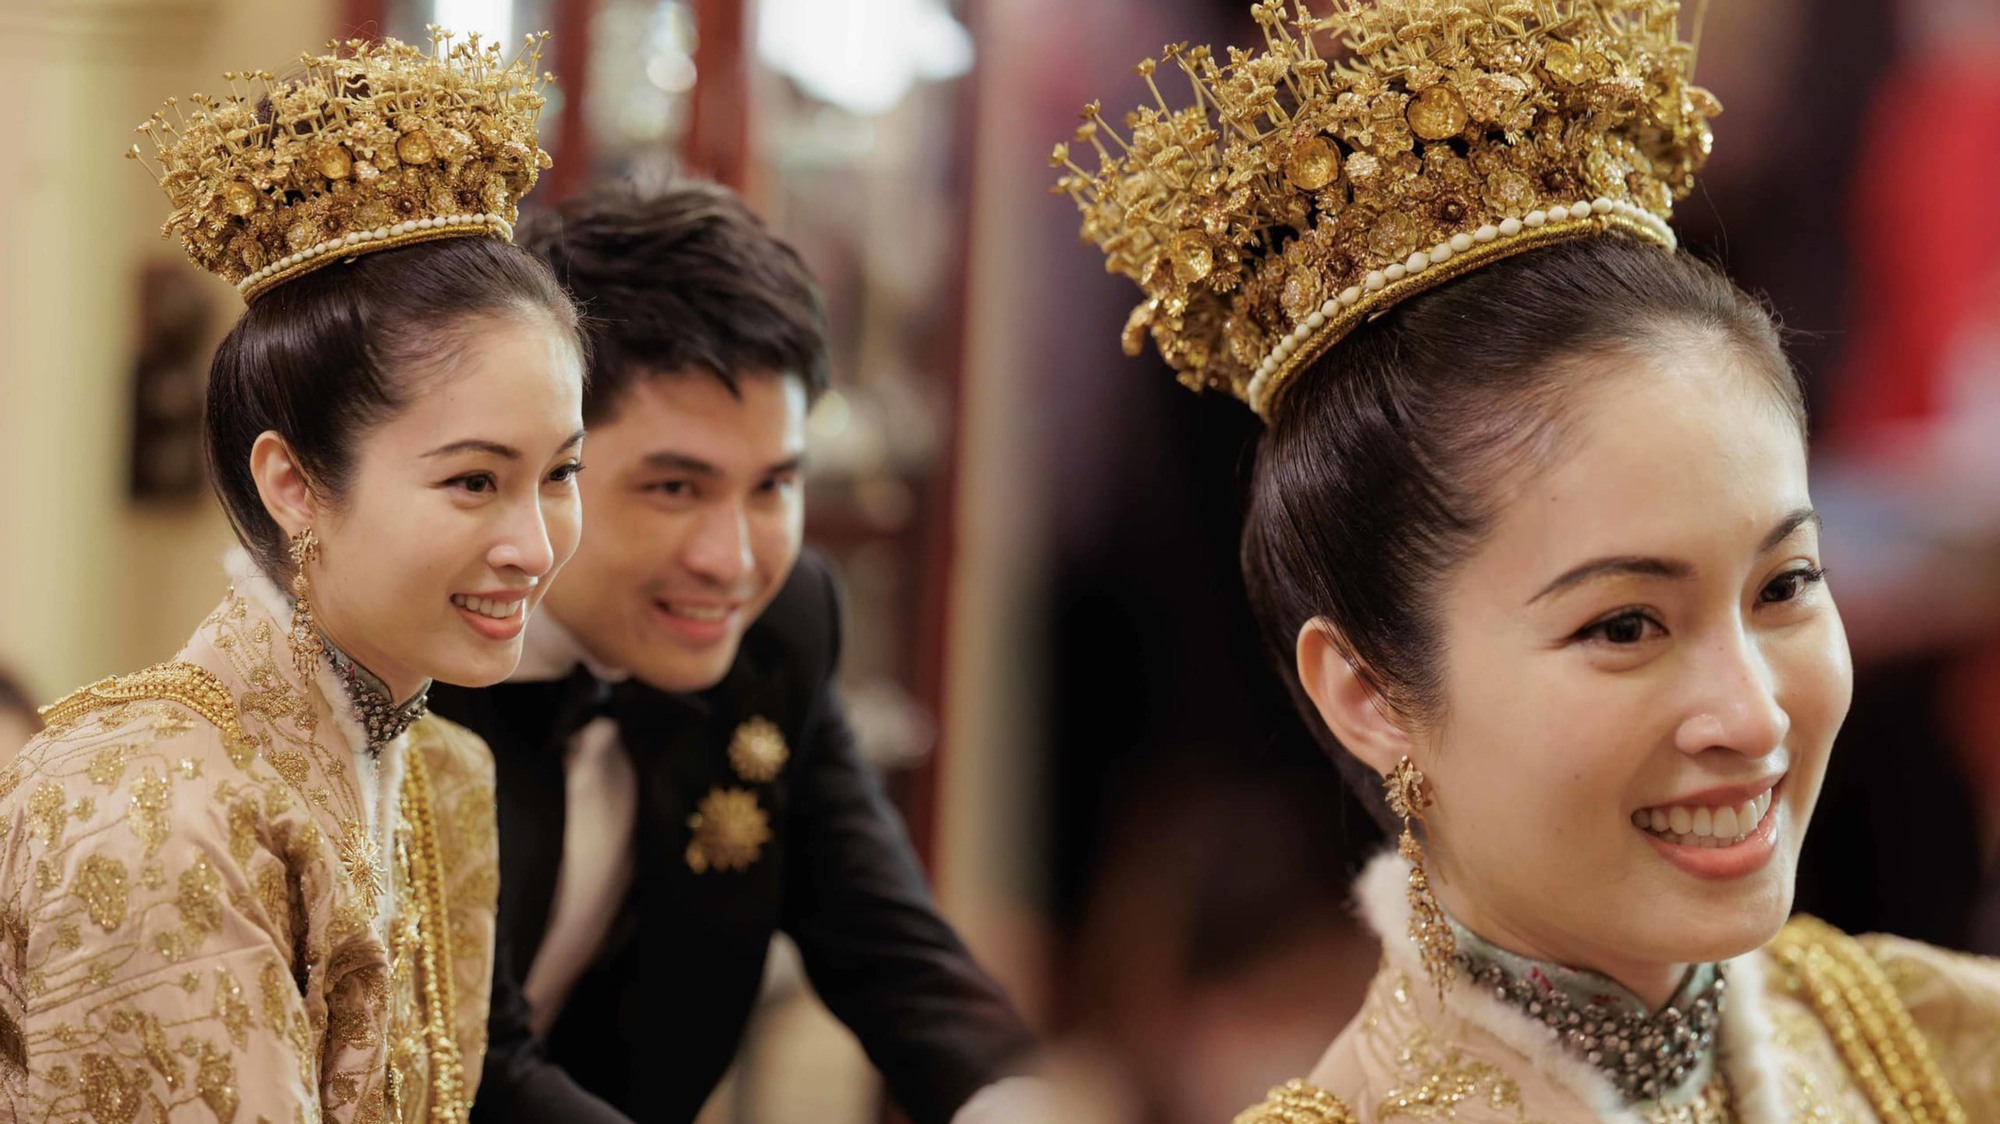 Đám cưới trong mơ của 'mỹ nhân chuyển giới đẹp nhất Thái Lan' Nong Poy: Cô dâu đội vương miện bằng vàng hạnh phúc cùng chú rể bước vào hôn lễ